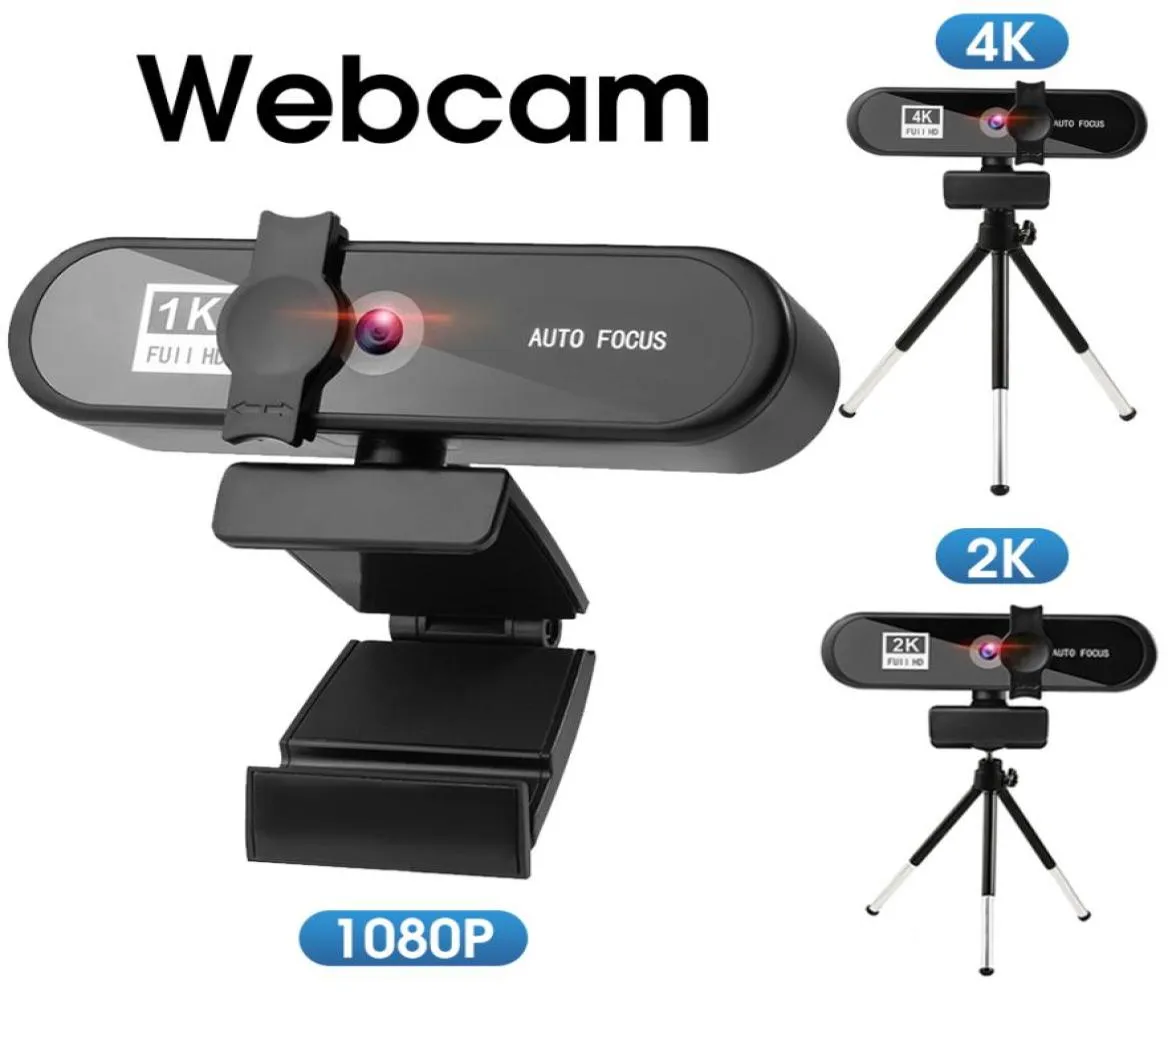 Webcam 1080p Mini Computador PC Camara Auto Focus Laptop Webcam 4K com Microfone Webcam para YouTube Live Broadcast Video Work5699262